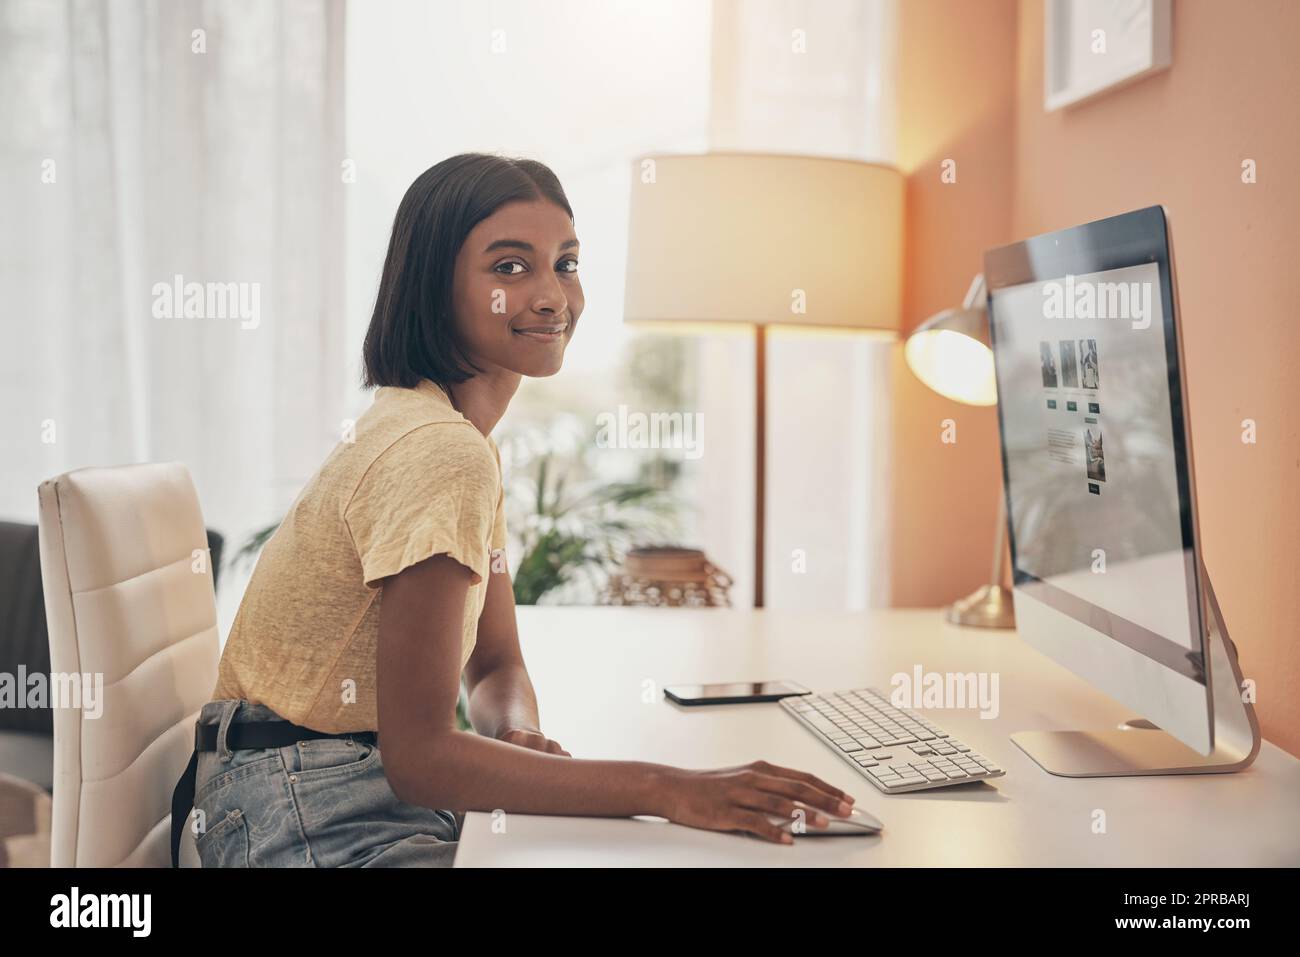 Meine Nebengeschäfte kommen gut an. Porträt einer jungen Frau, die einen Computer benutzt, während sie von zu Hause aus arbeitet. Stockfoto